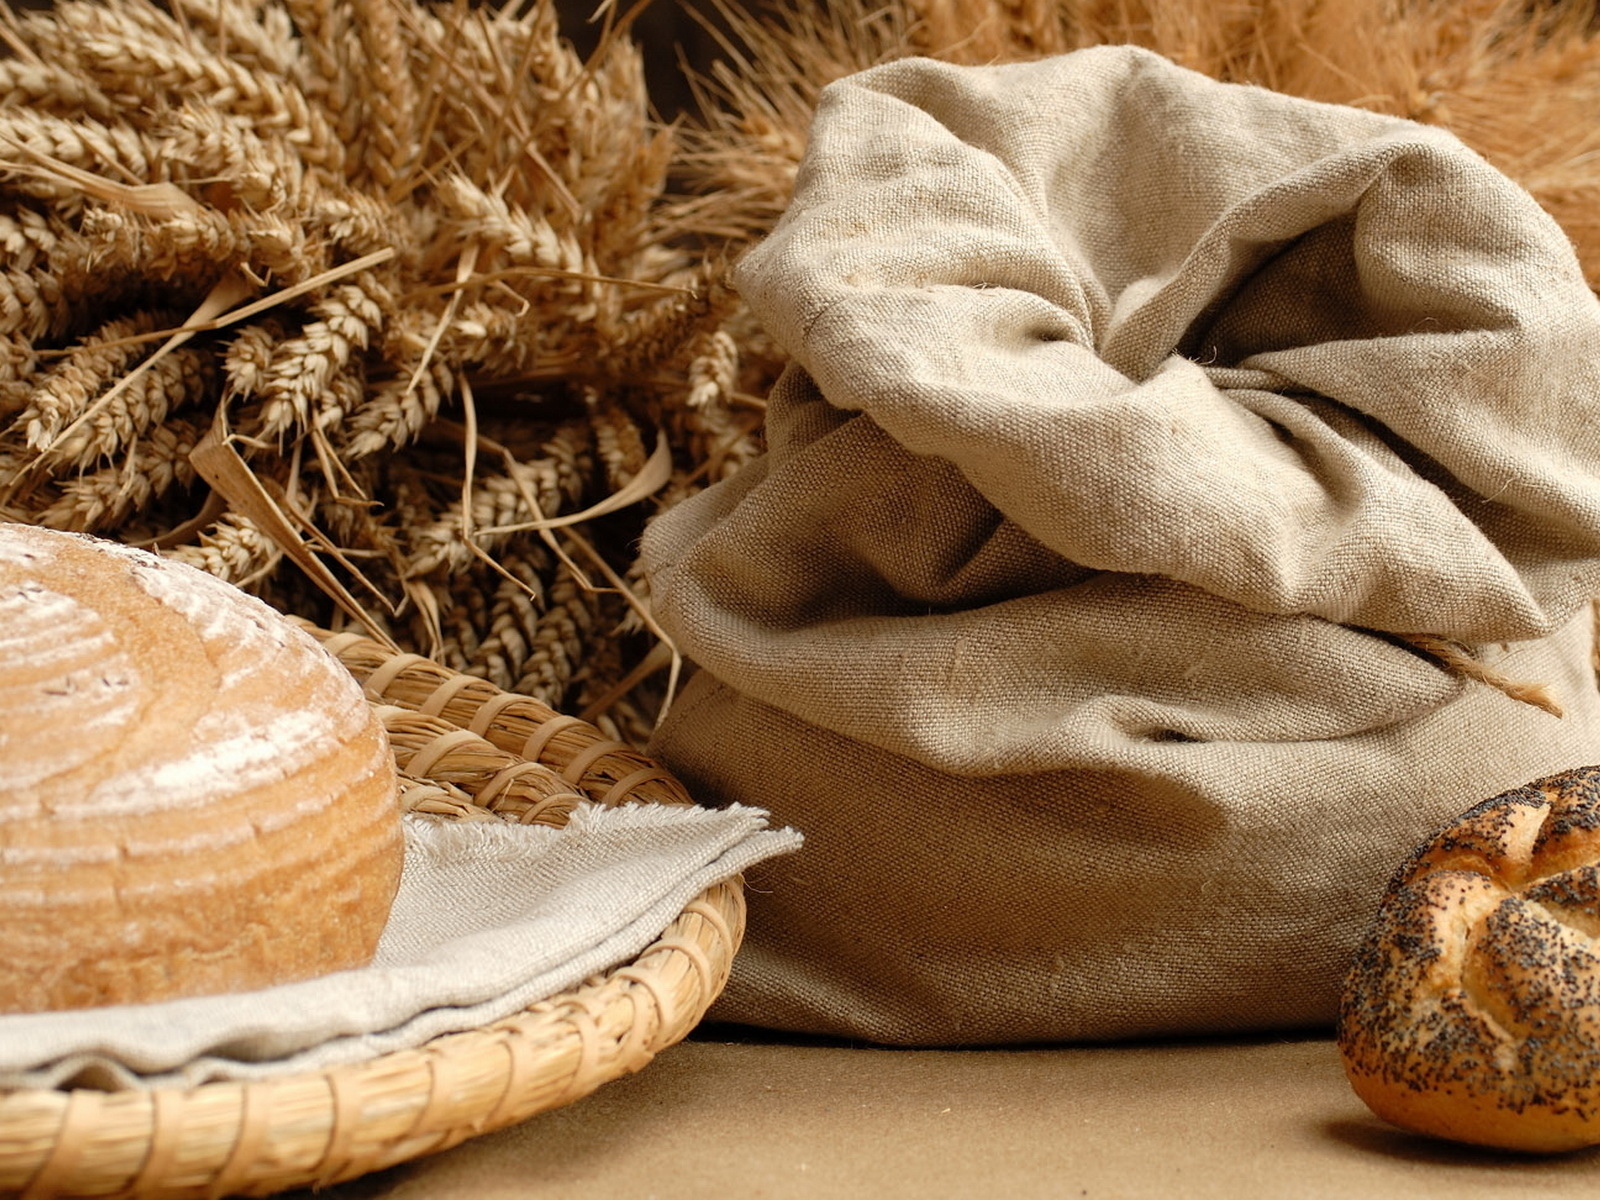 Колодец-журавль, мельница и домик для козы. В музее хлеба в Чечерском районе — новые экспозиции